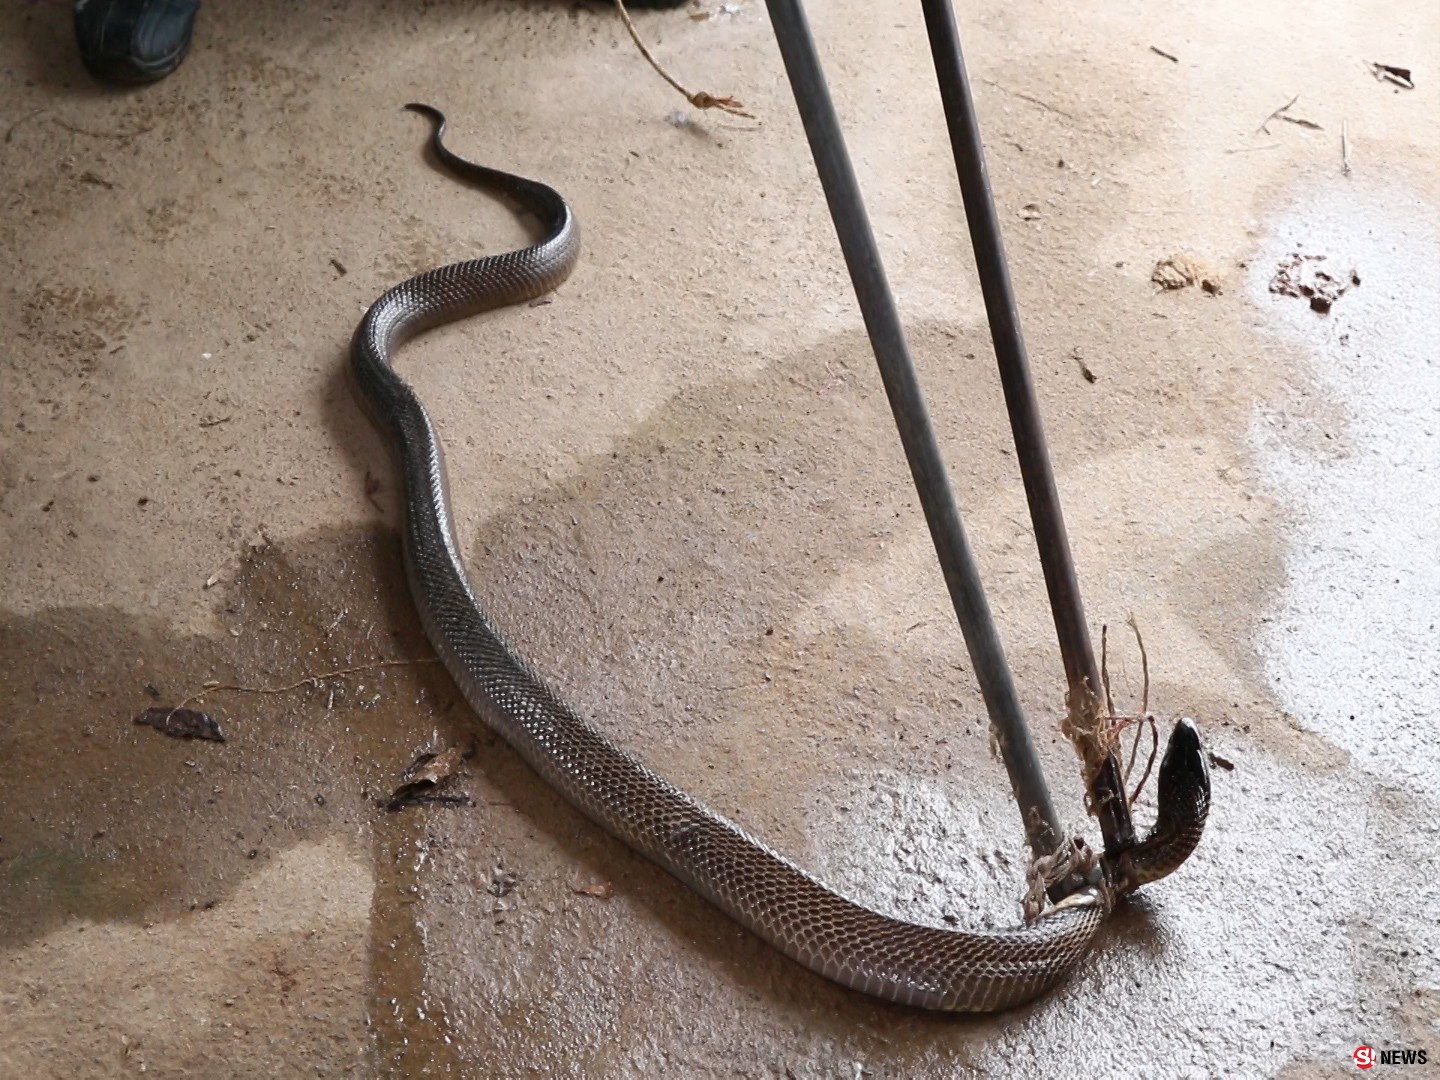 ตูบเห่าเตือนภัย-ก่อนเจ้าของบ้านผงะพบ “งูเห่าตัวเบ้ง” ซุกครัวโร่แจ้งกู้ภัยจับ